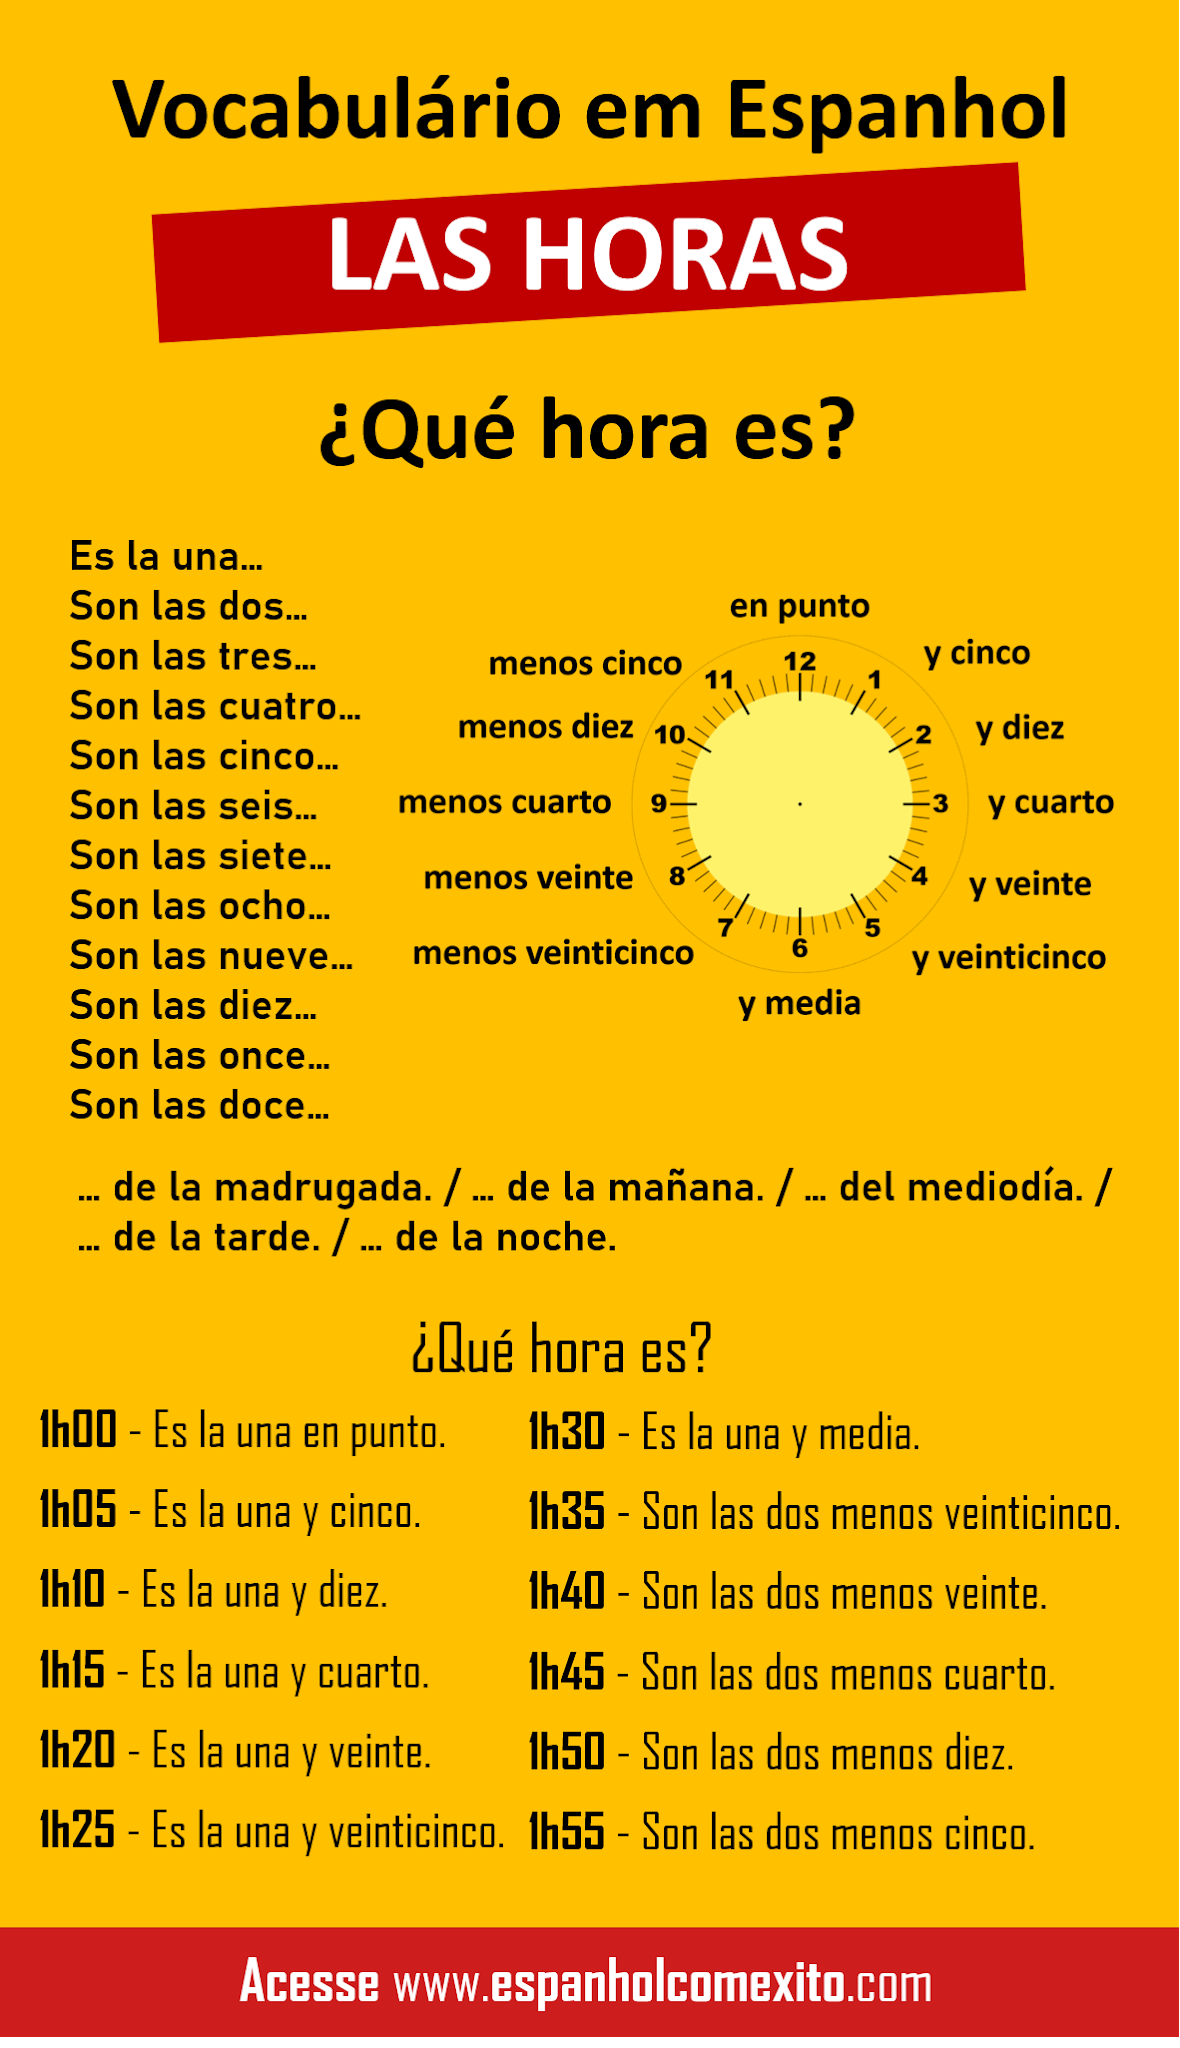 Horas em espanhol: como perguntar e responder? - Brasil Escola